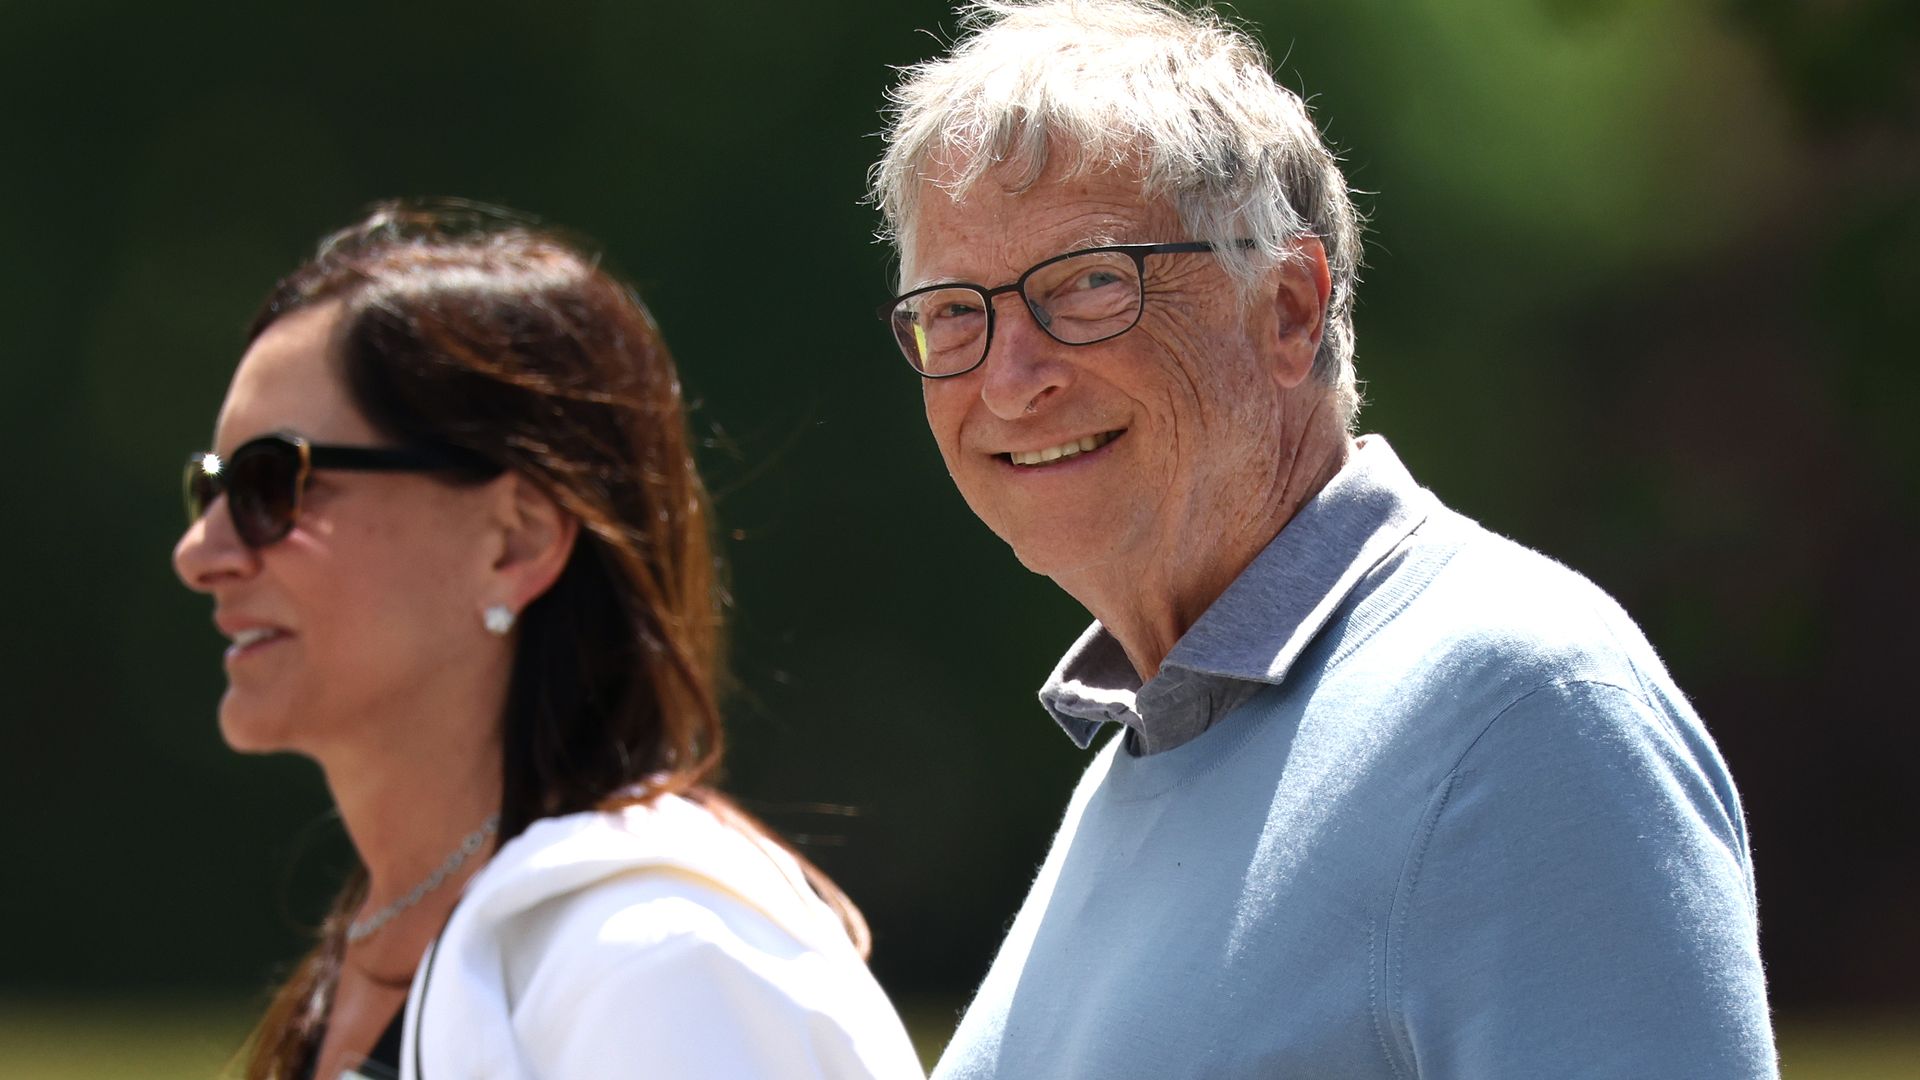 Bill Gates smiling walking next to Paula Hurd